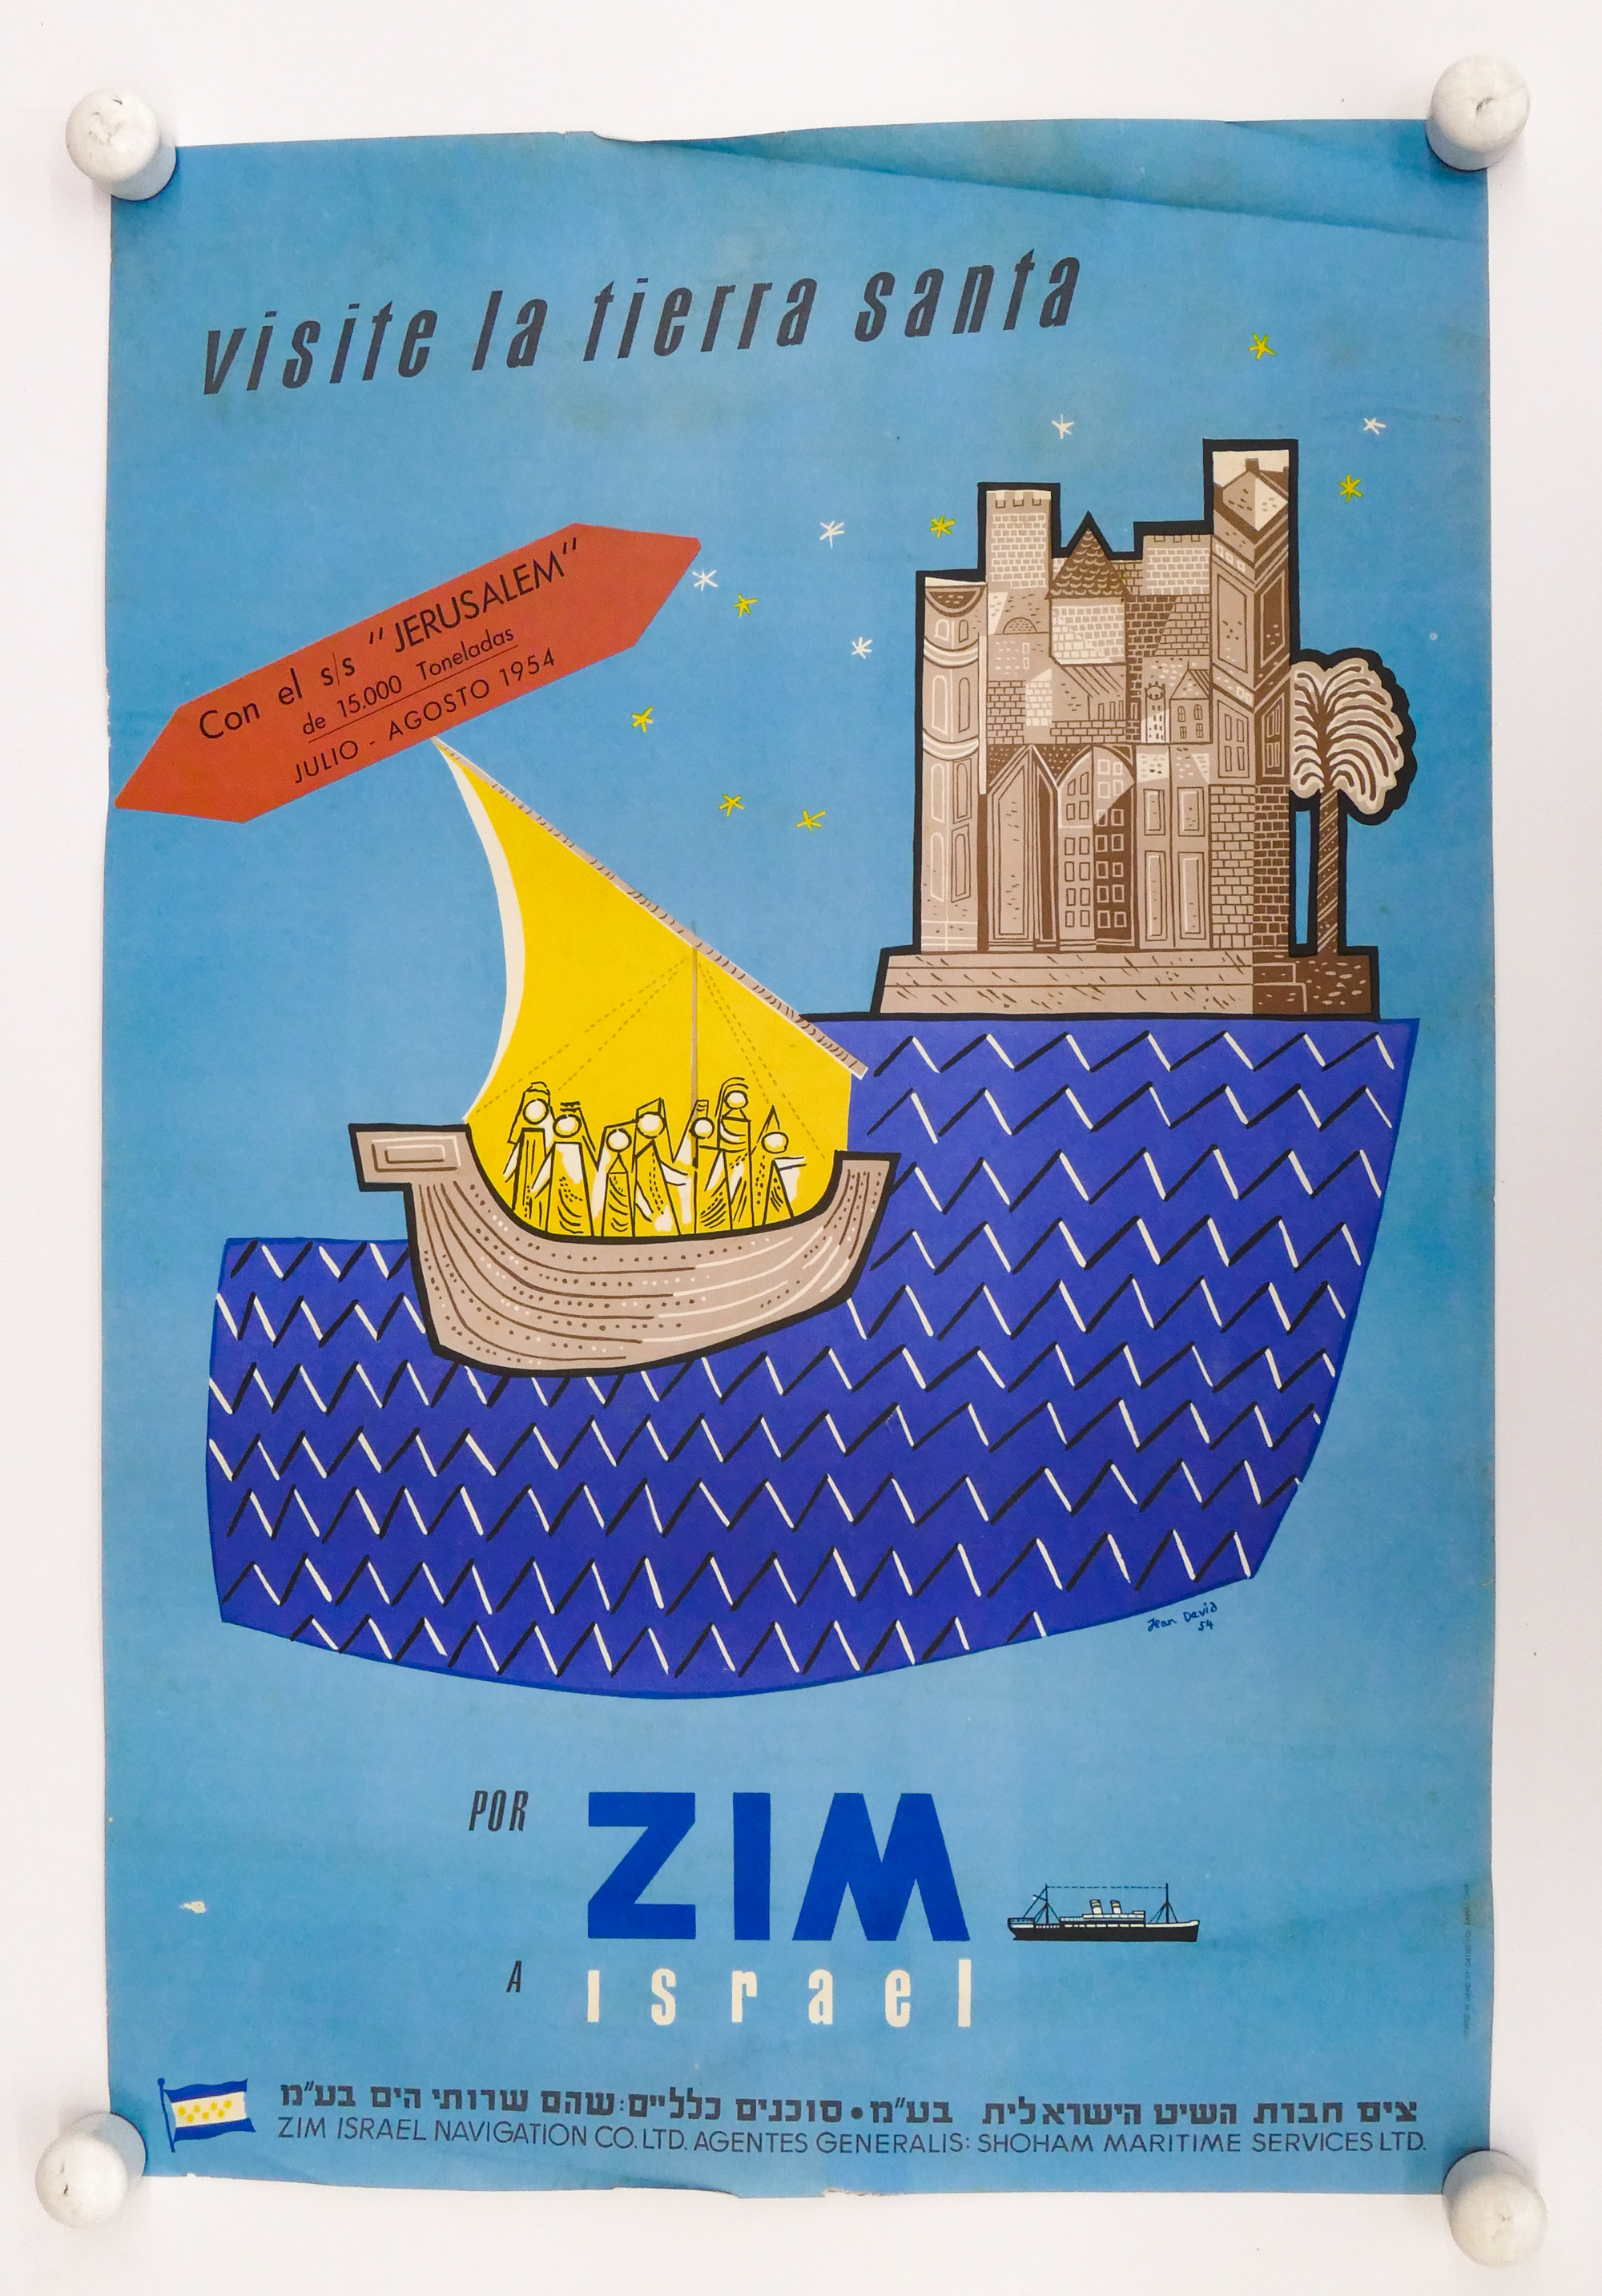 1954 Israeli Zim ''Visite La Tierra